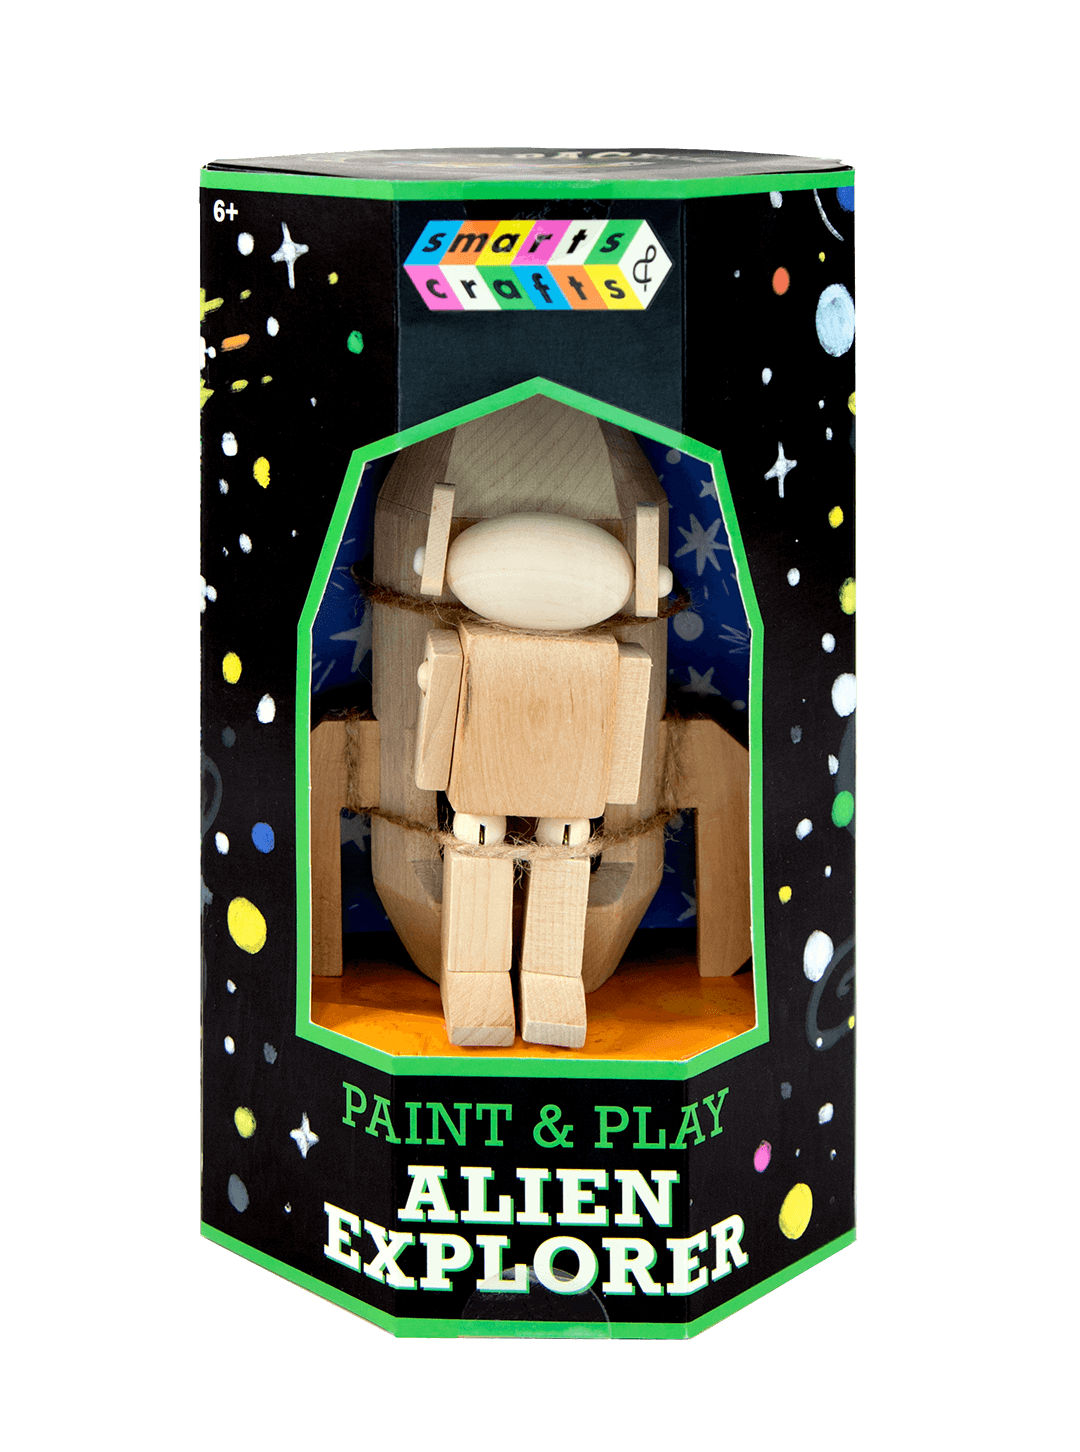 Hexagonal packaging for Smarts & Crafts Alien Explorer